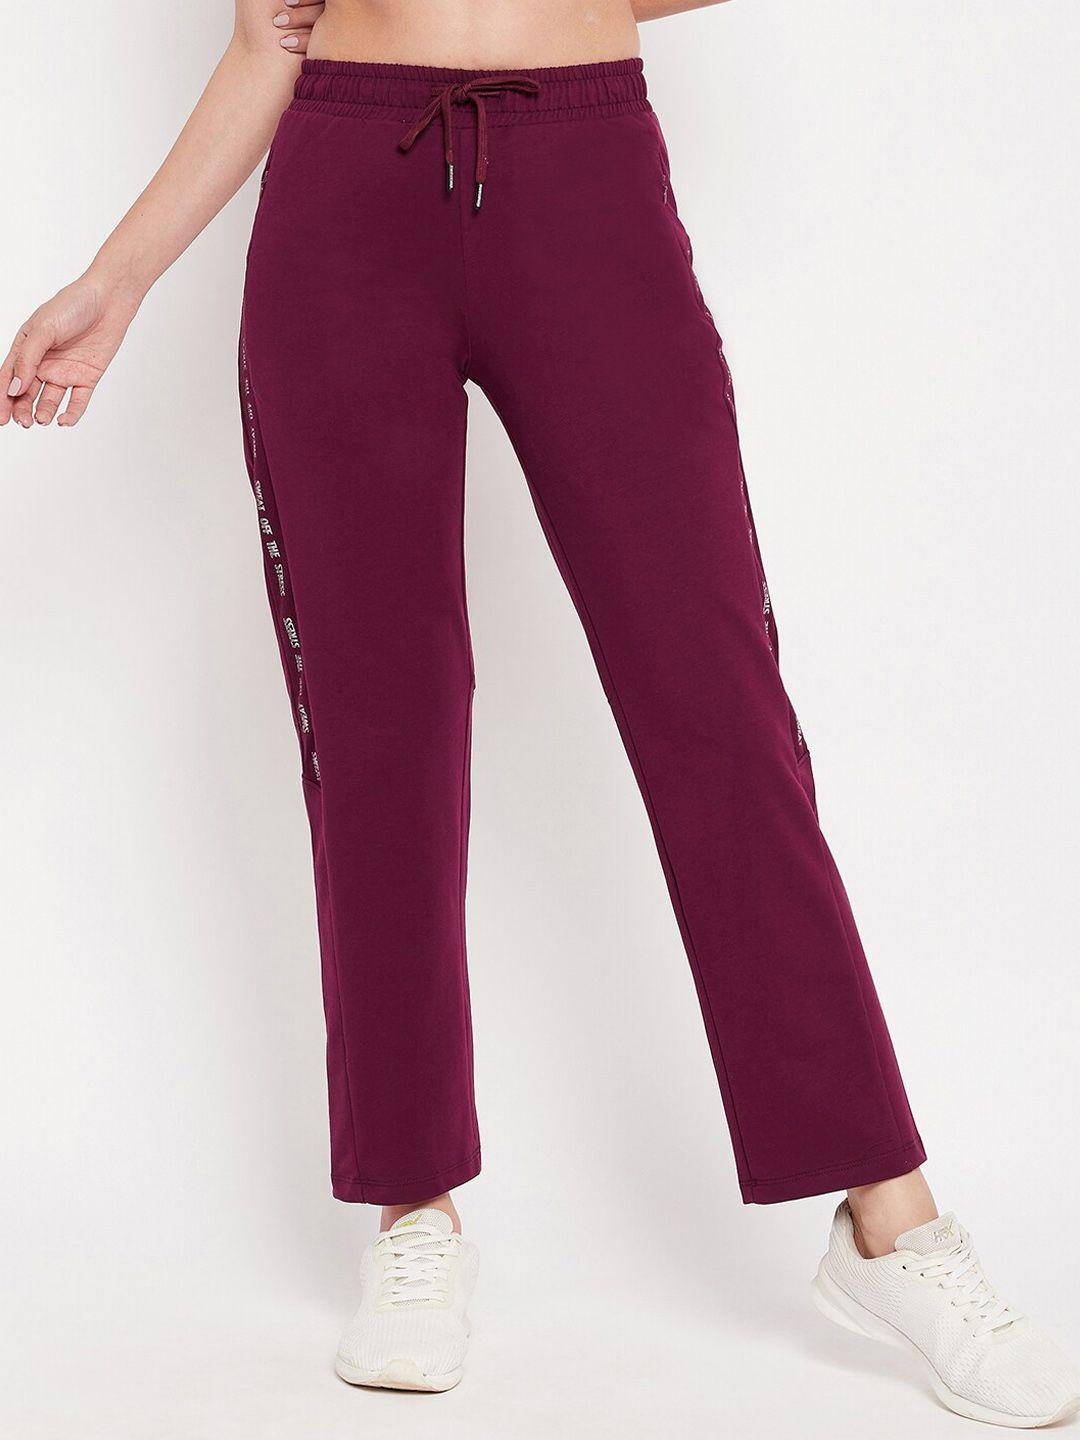 madame-m-secret-women-purple-solid-track-pants